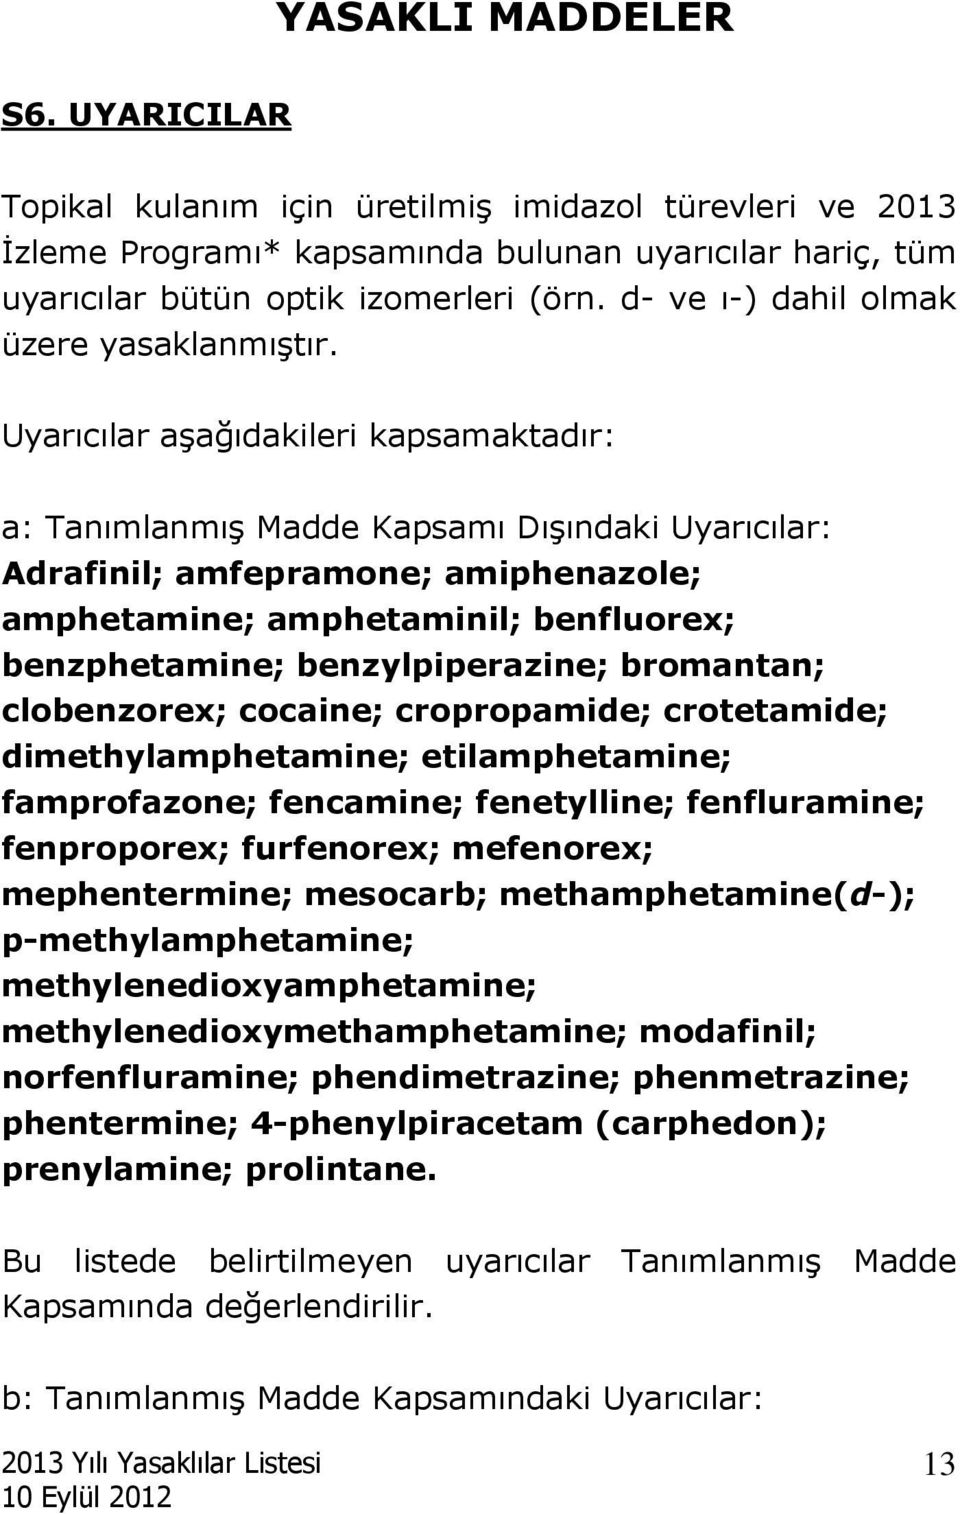 Uyarıcılar aşağıdakileri kapsamaktadır: a: Tanımlanmış Madde Kapsamı Dışındaki Uyarıcılar: Adrafinil; amfepramone; amiphenazole; amphetamine; amphetaminil; benfluorex; benzphetamine;